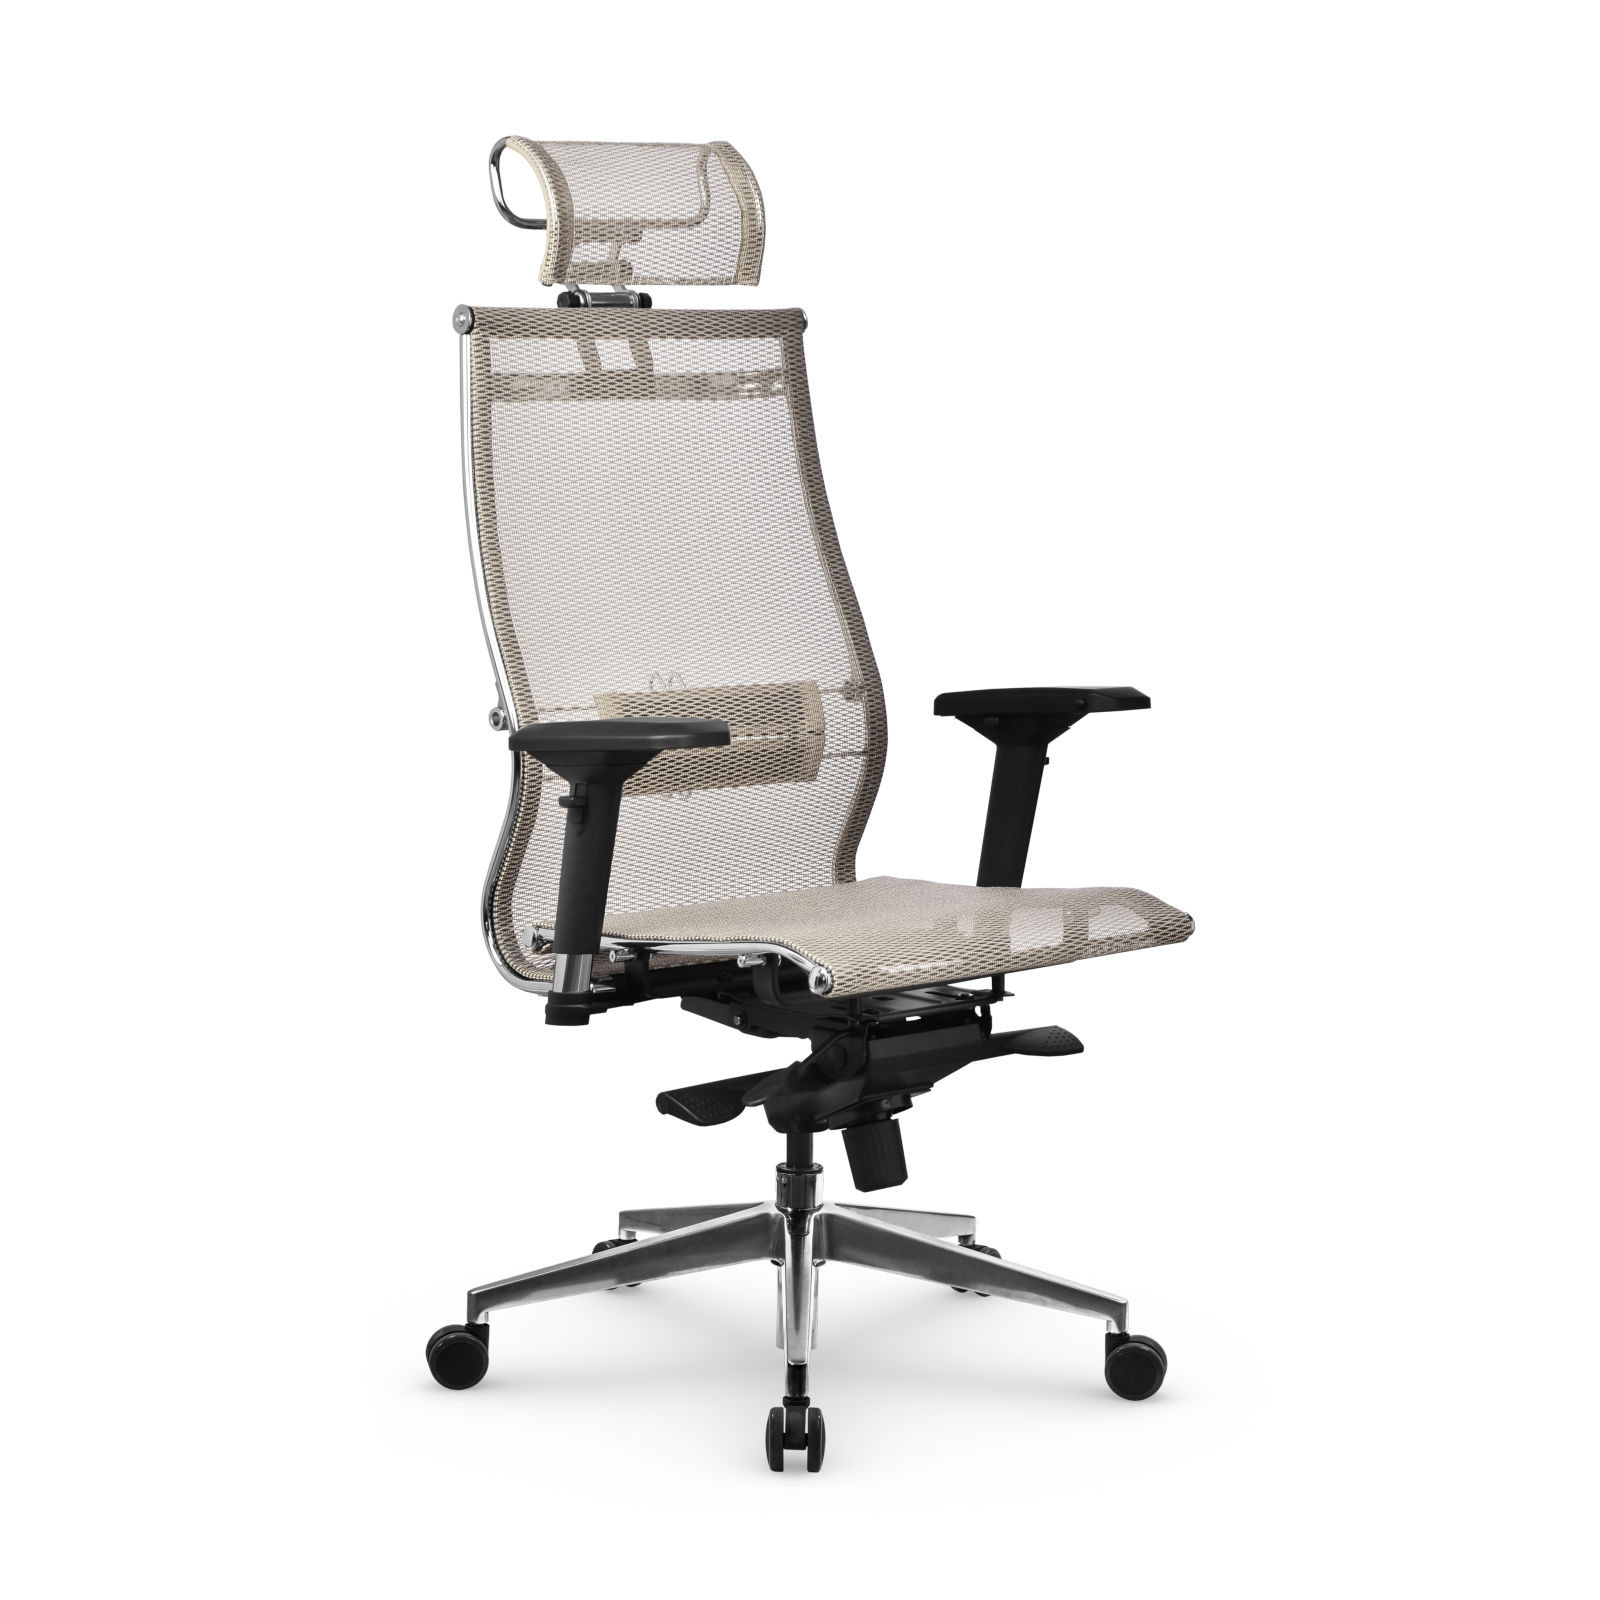 Кресло Samurai S-3.051 MPES, офисное кресло, компьютерное кресло, кресло самурай, кресло для дома и офиса, кресто Metta